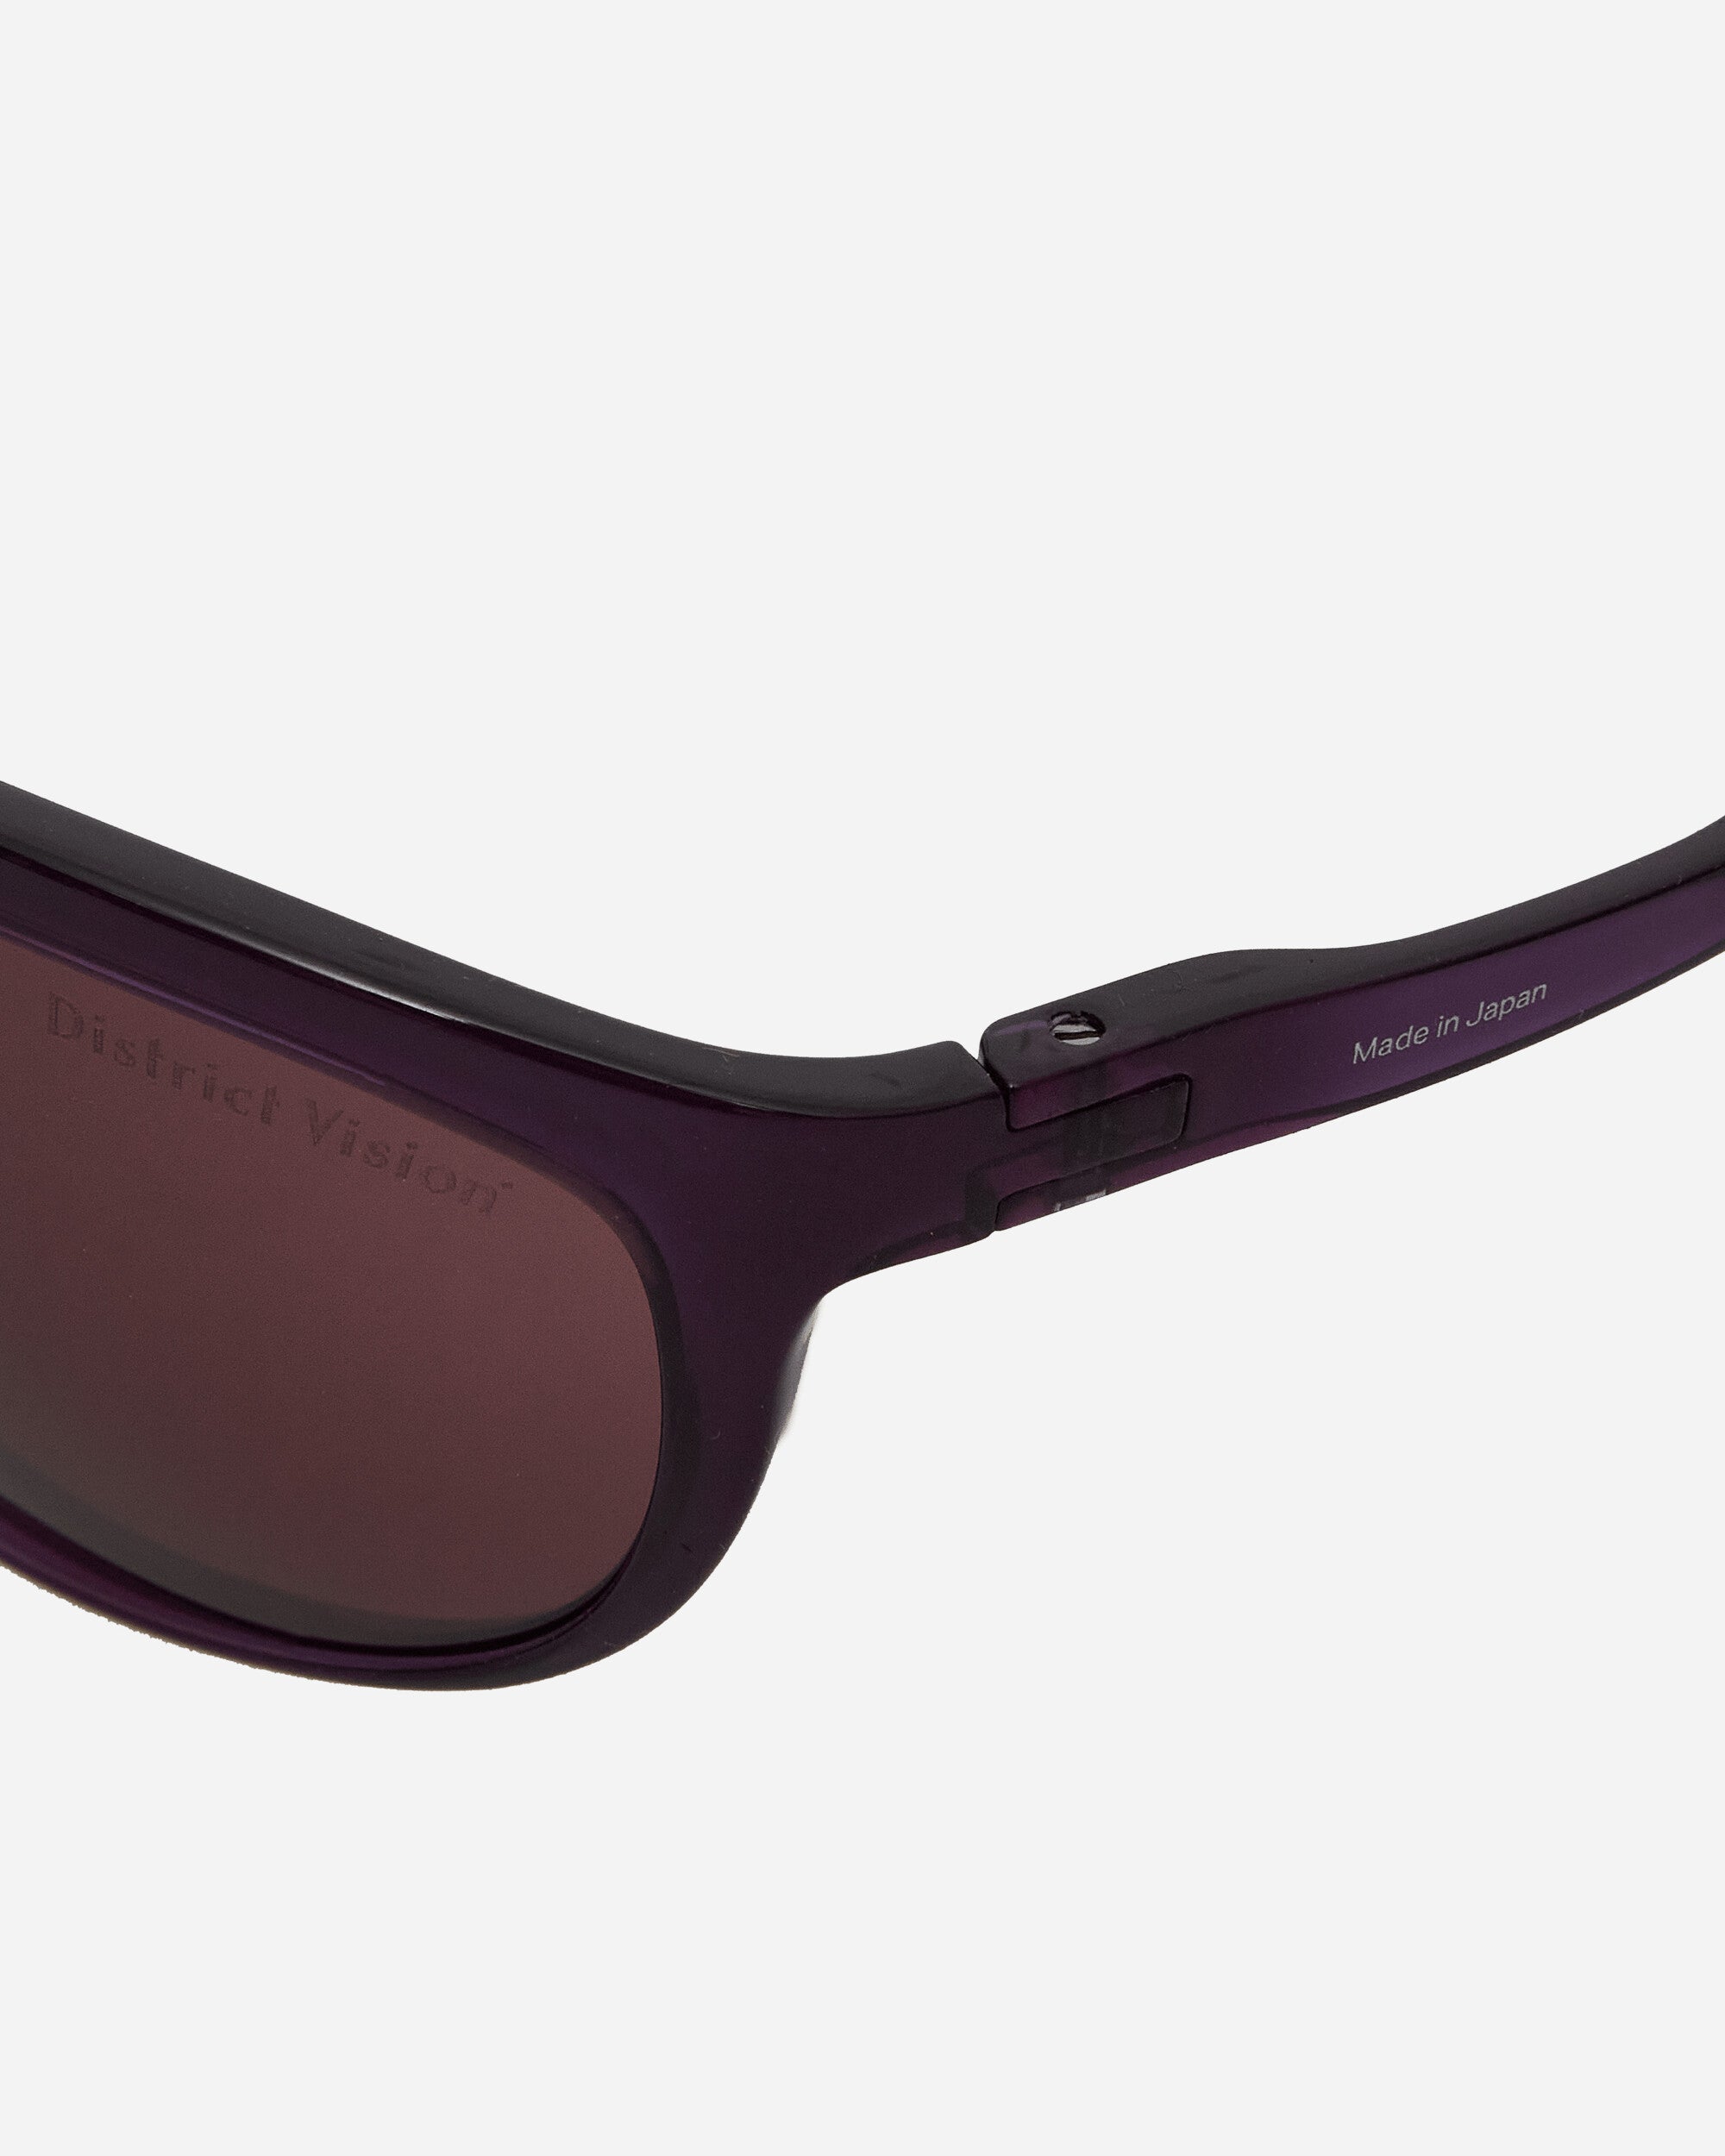 District Vision Takeyoshi Altitude Master Nightshade/D+ Black Rose Eyewear Sunglasses DVG004 NBR